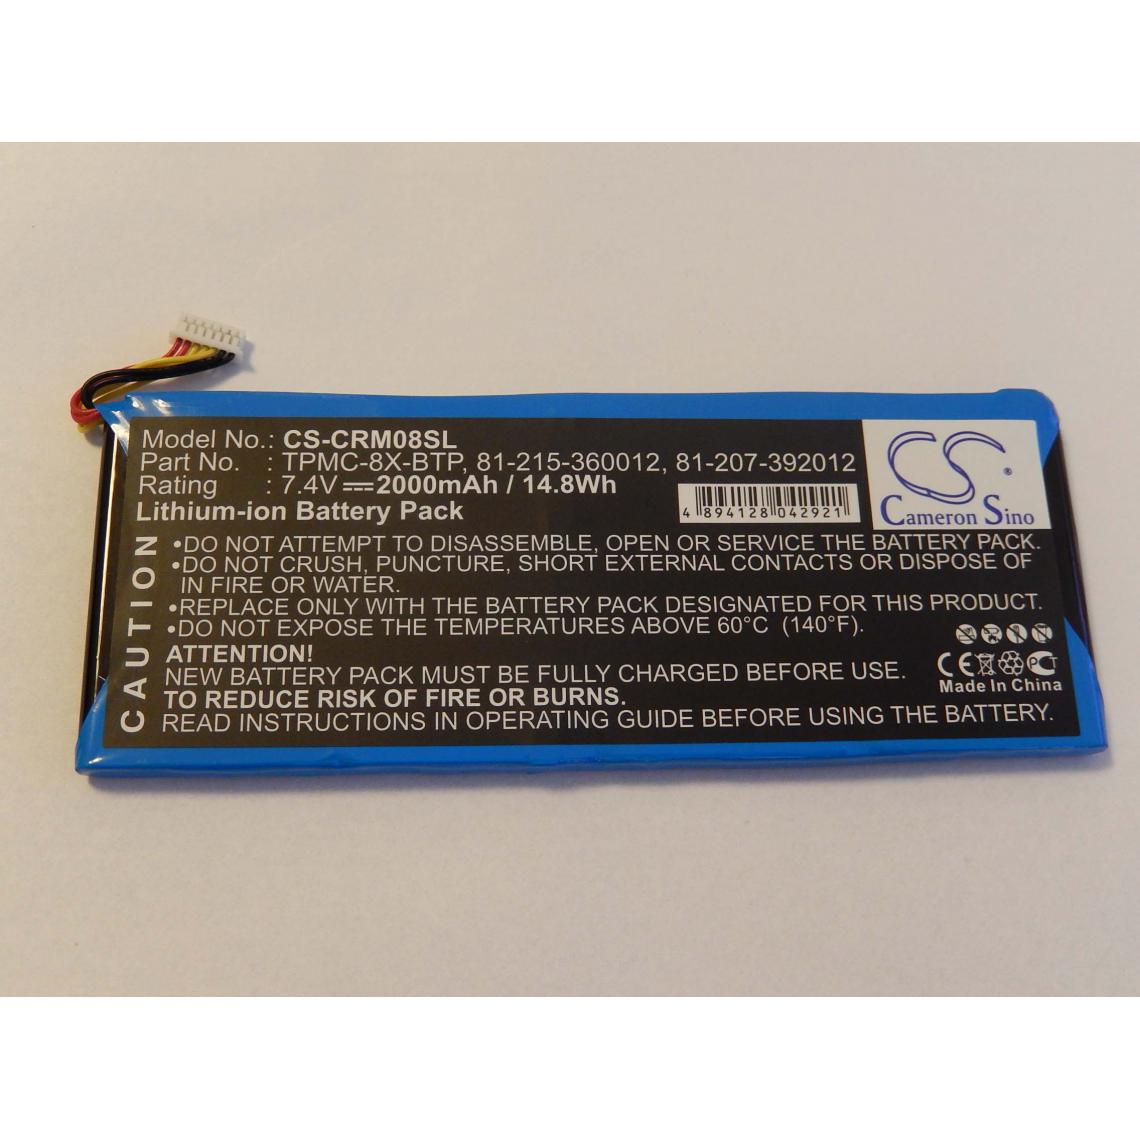 Vhbw - vhbw batterie remplace Crestron 81-207-392012, 81-215-360012, TPMC-8X-BTP pour touchpad sans fil (2000mAh, 7,4V, Li-Ion) - Autre appareil de mesure